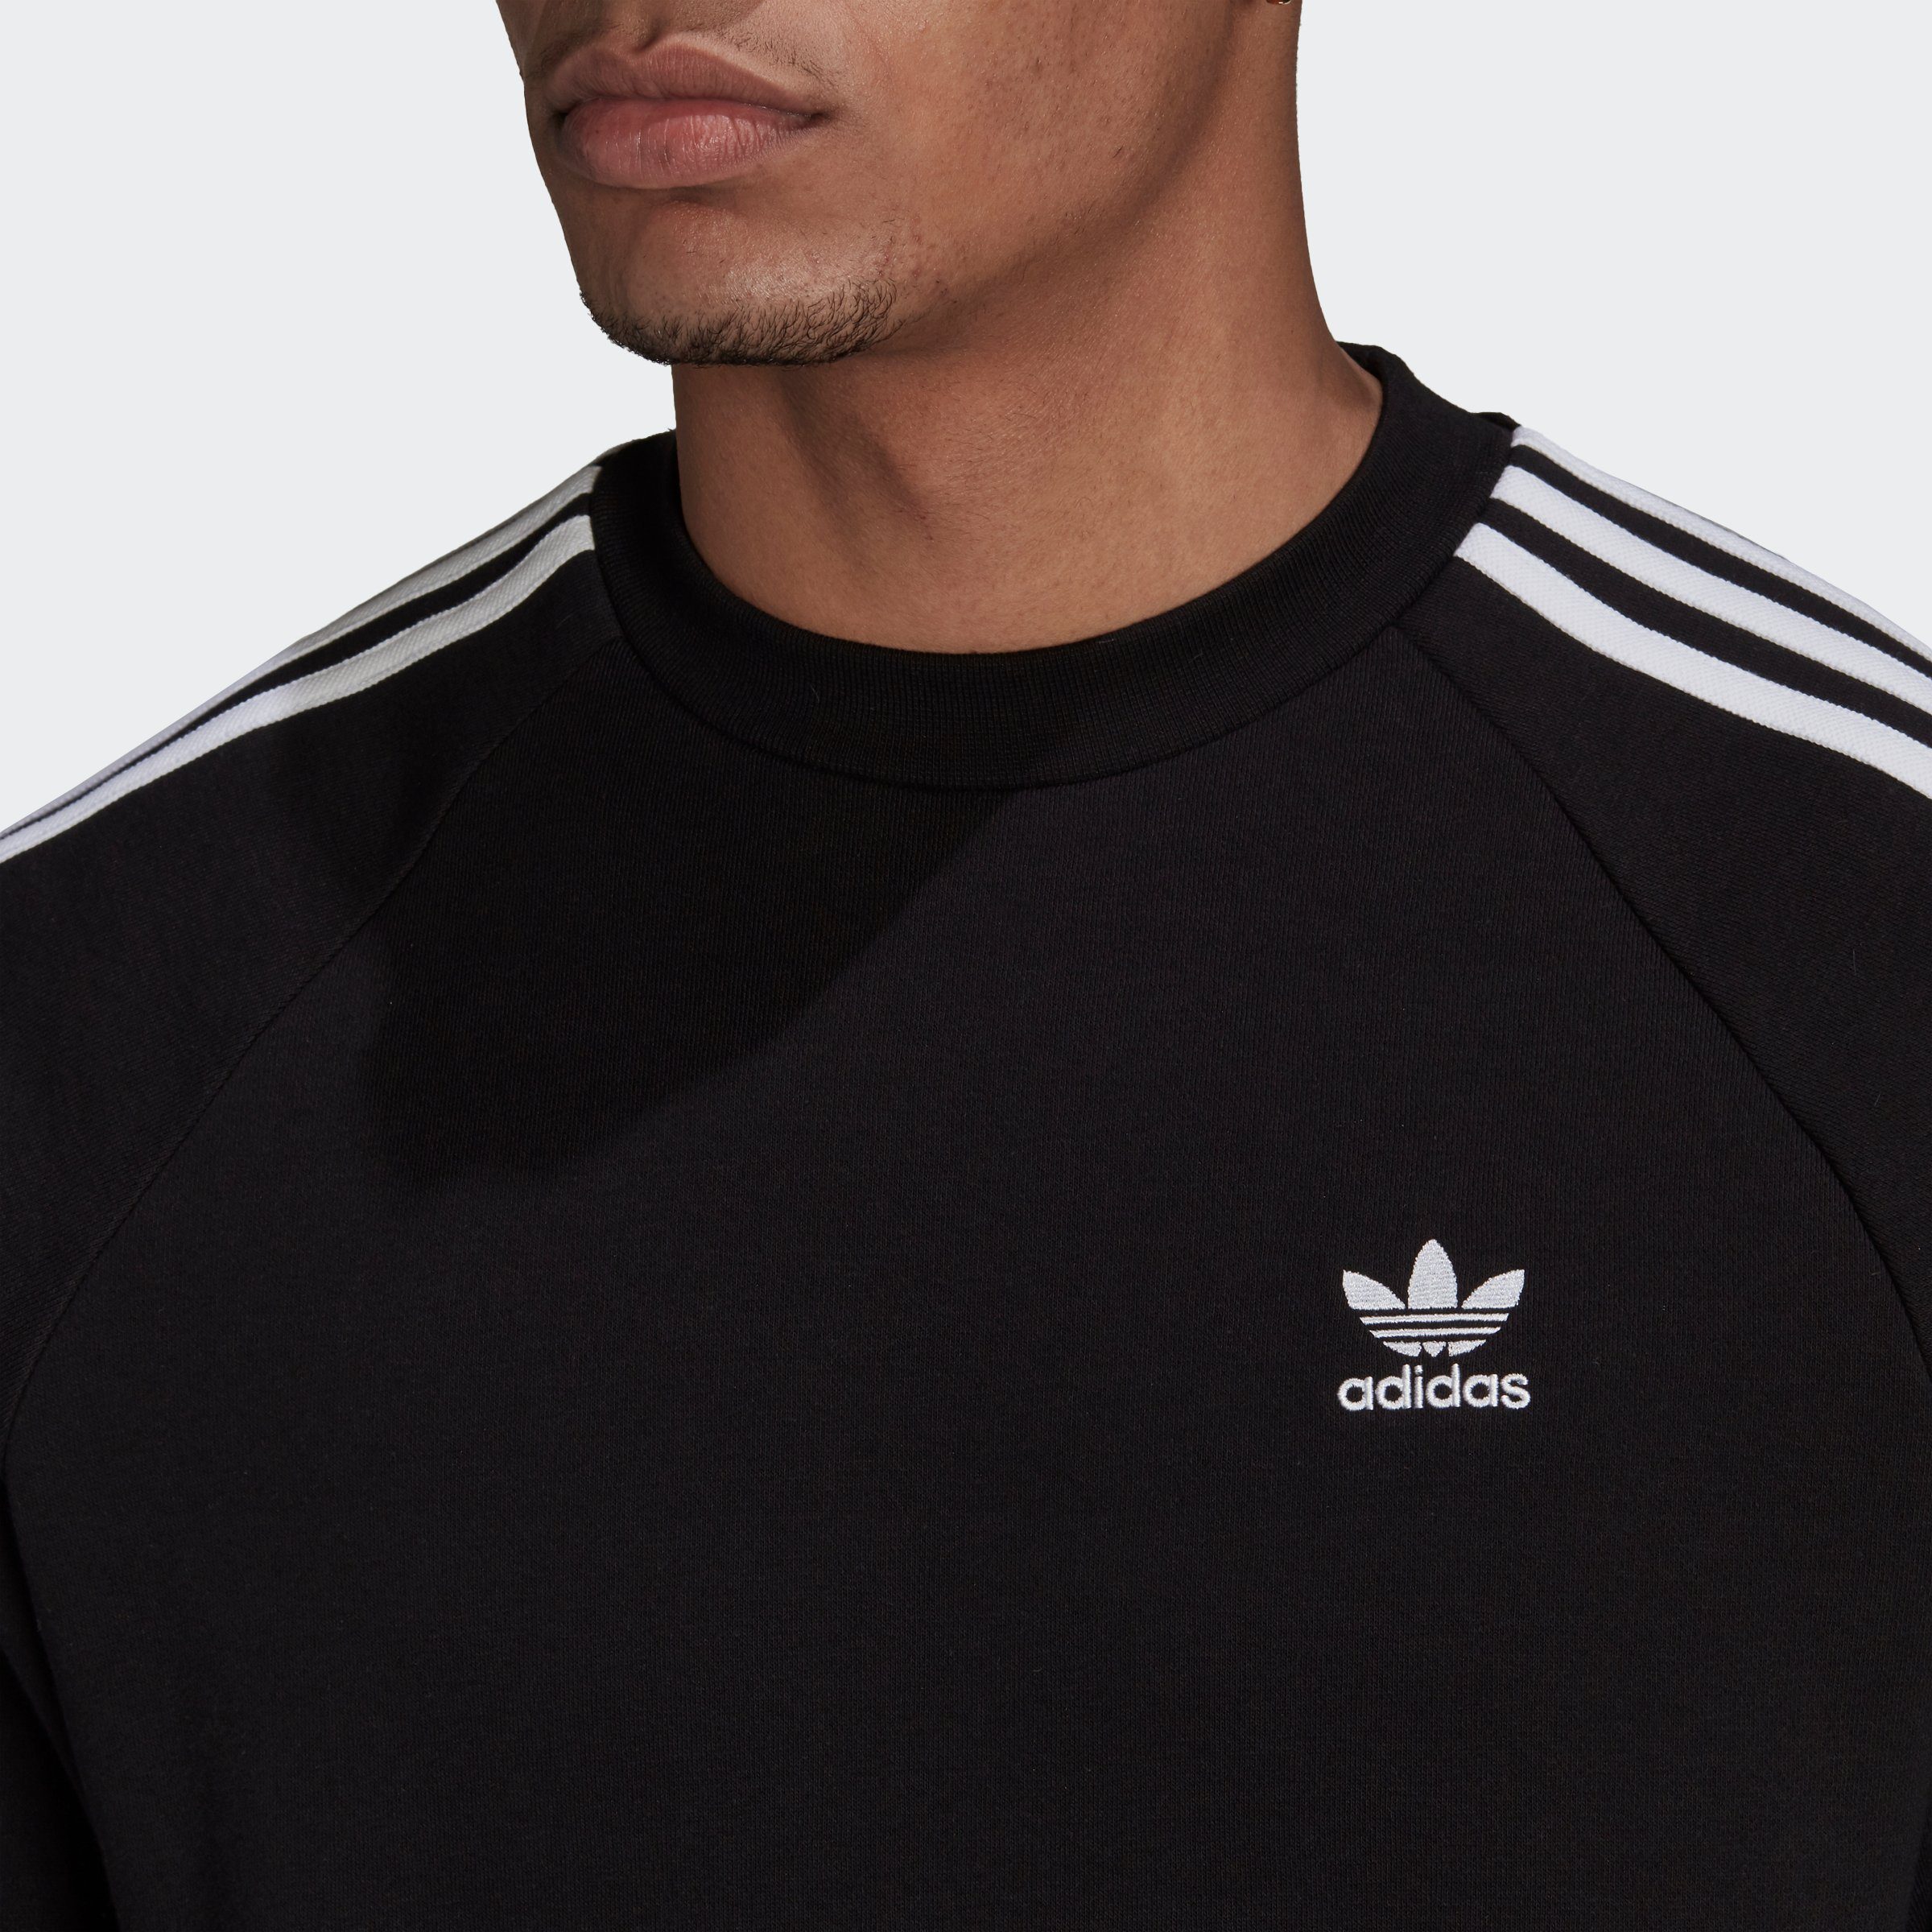 CLASSICS ADICOLOR Originals 3-STREIFEN BLACK adidas Sweatshirt